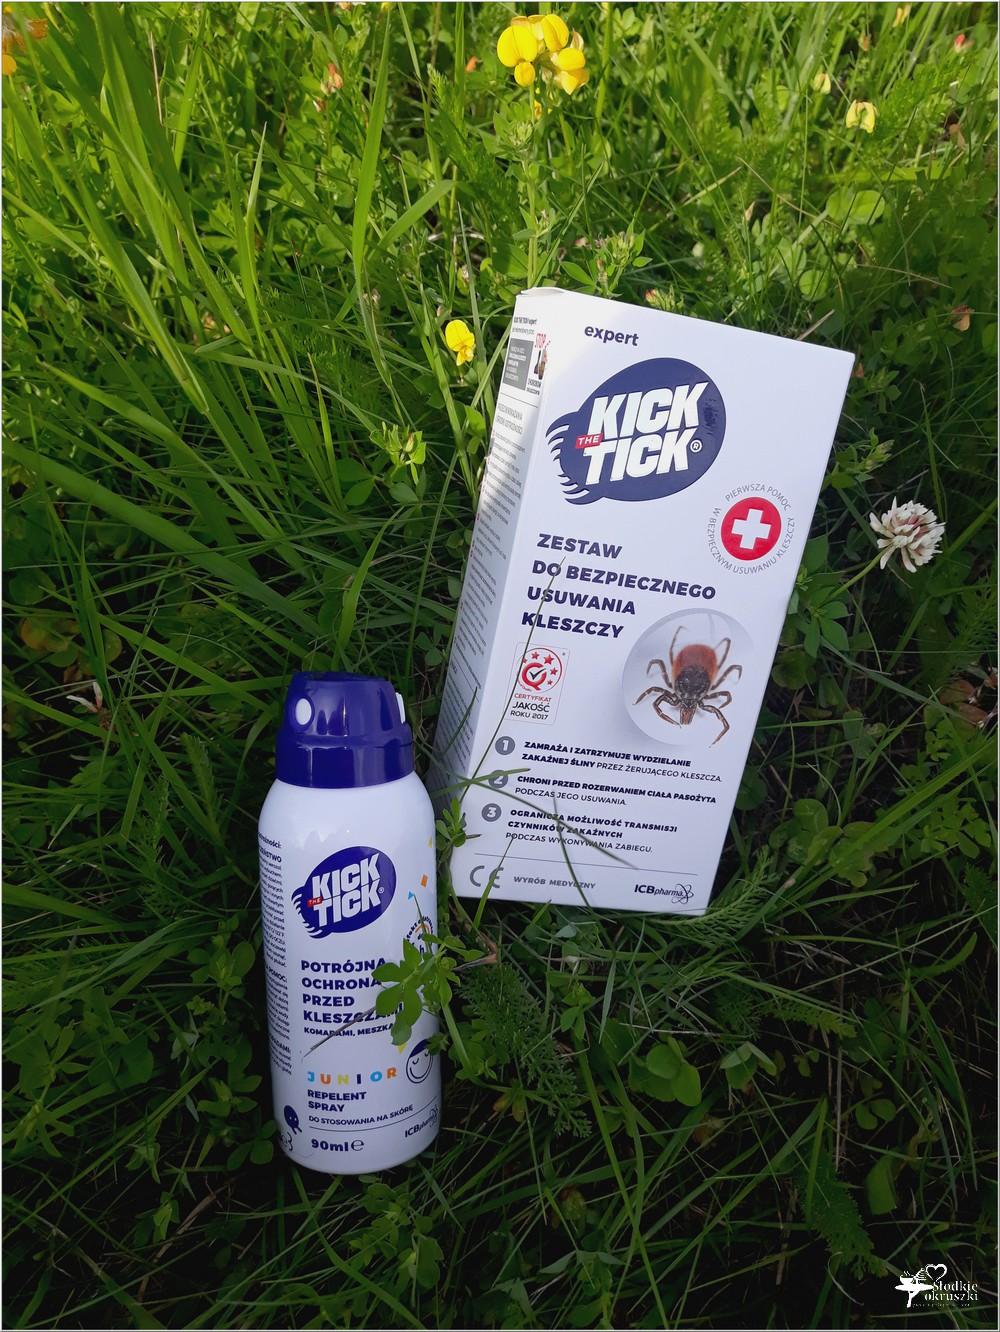 Kick The Tick - skuteczne preparaty w walce z kleszczami | Słodkie okruszki